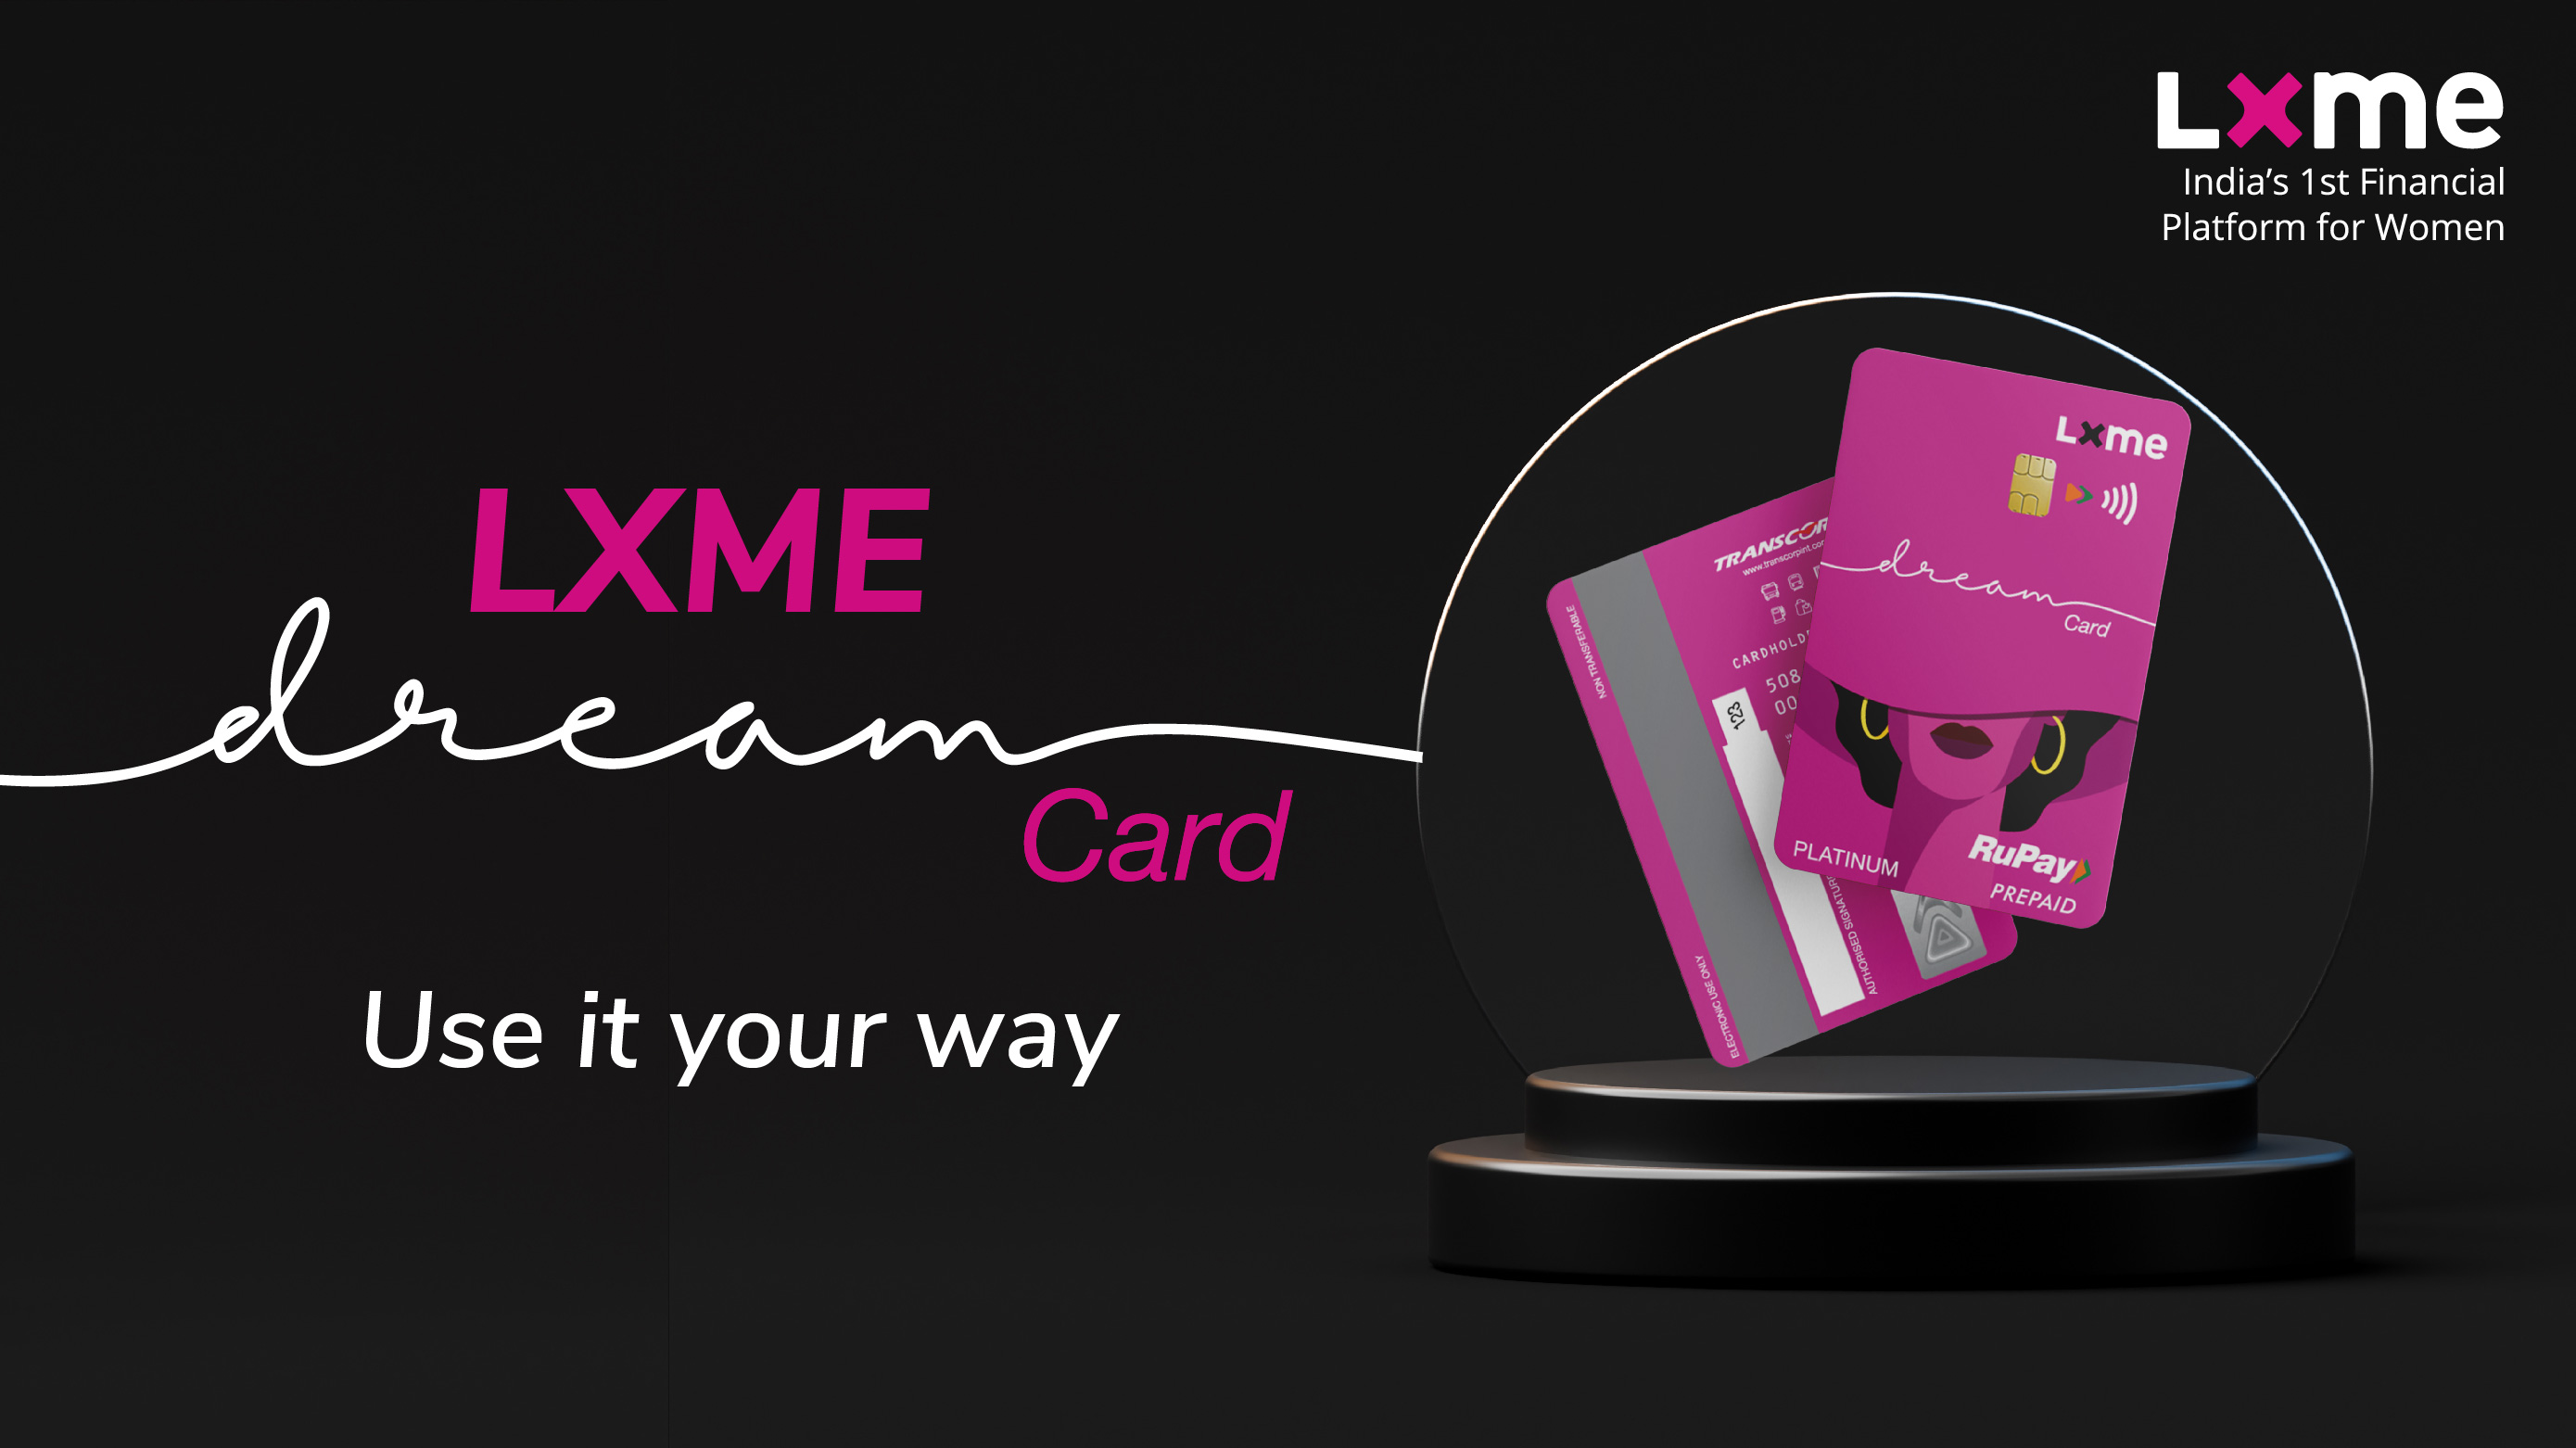 Lxme Dream Card